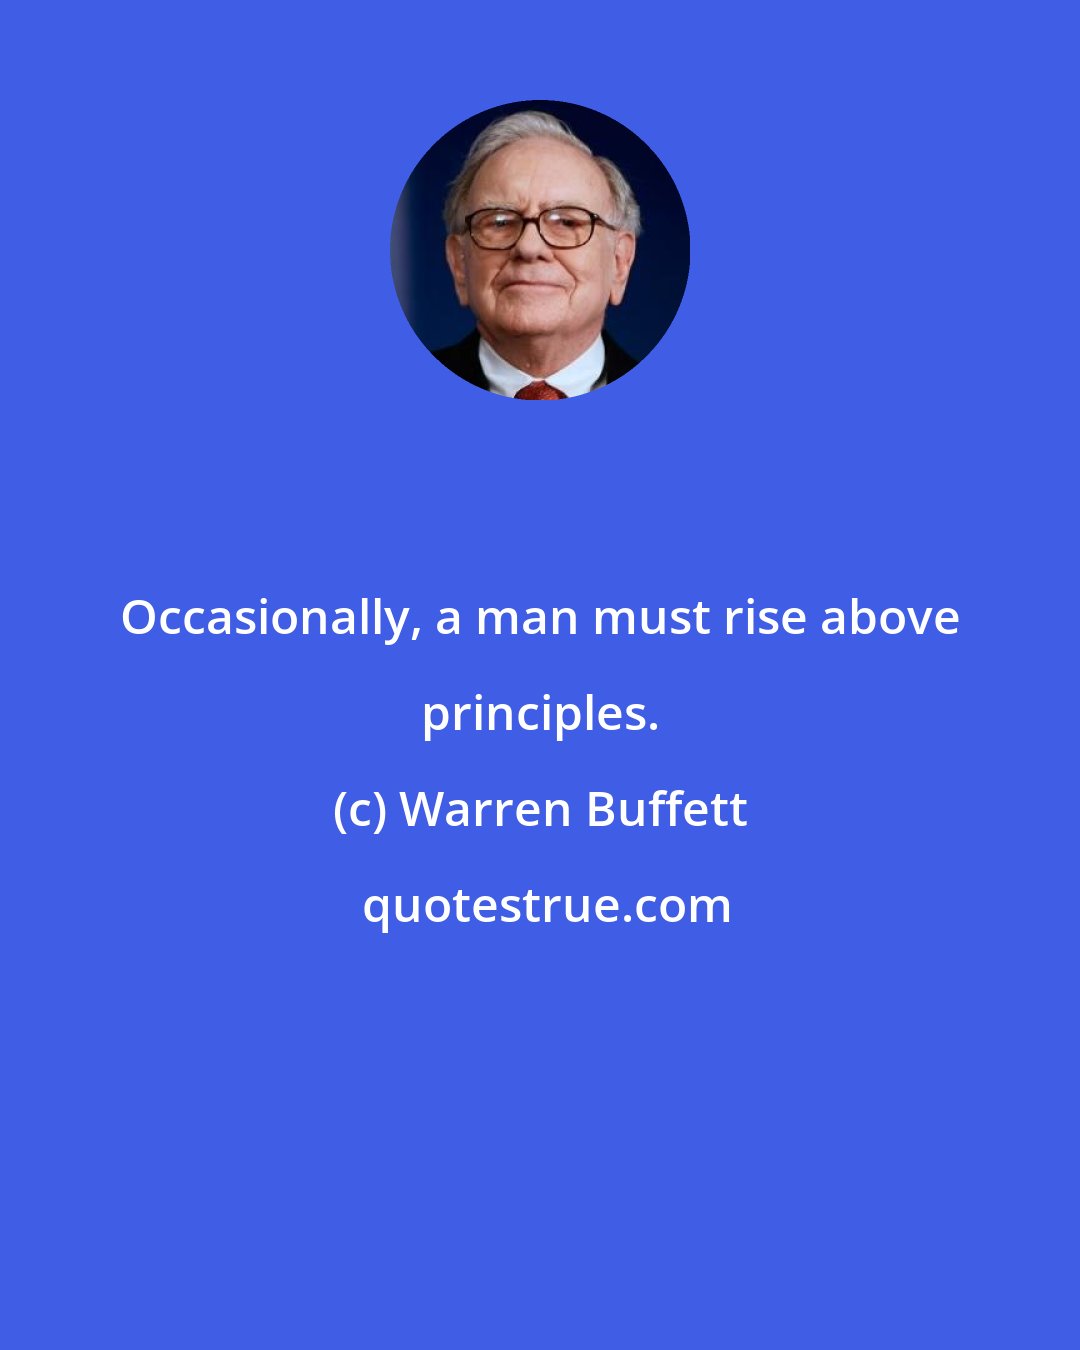 Warren Buffett: Occasionally, a man must rise above principles.